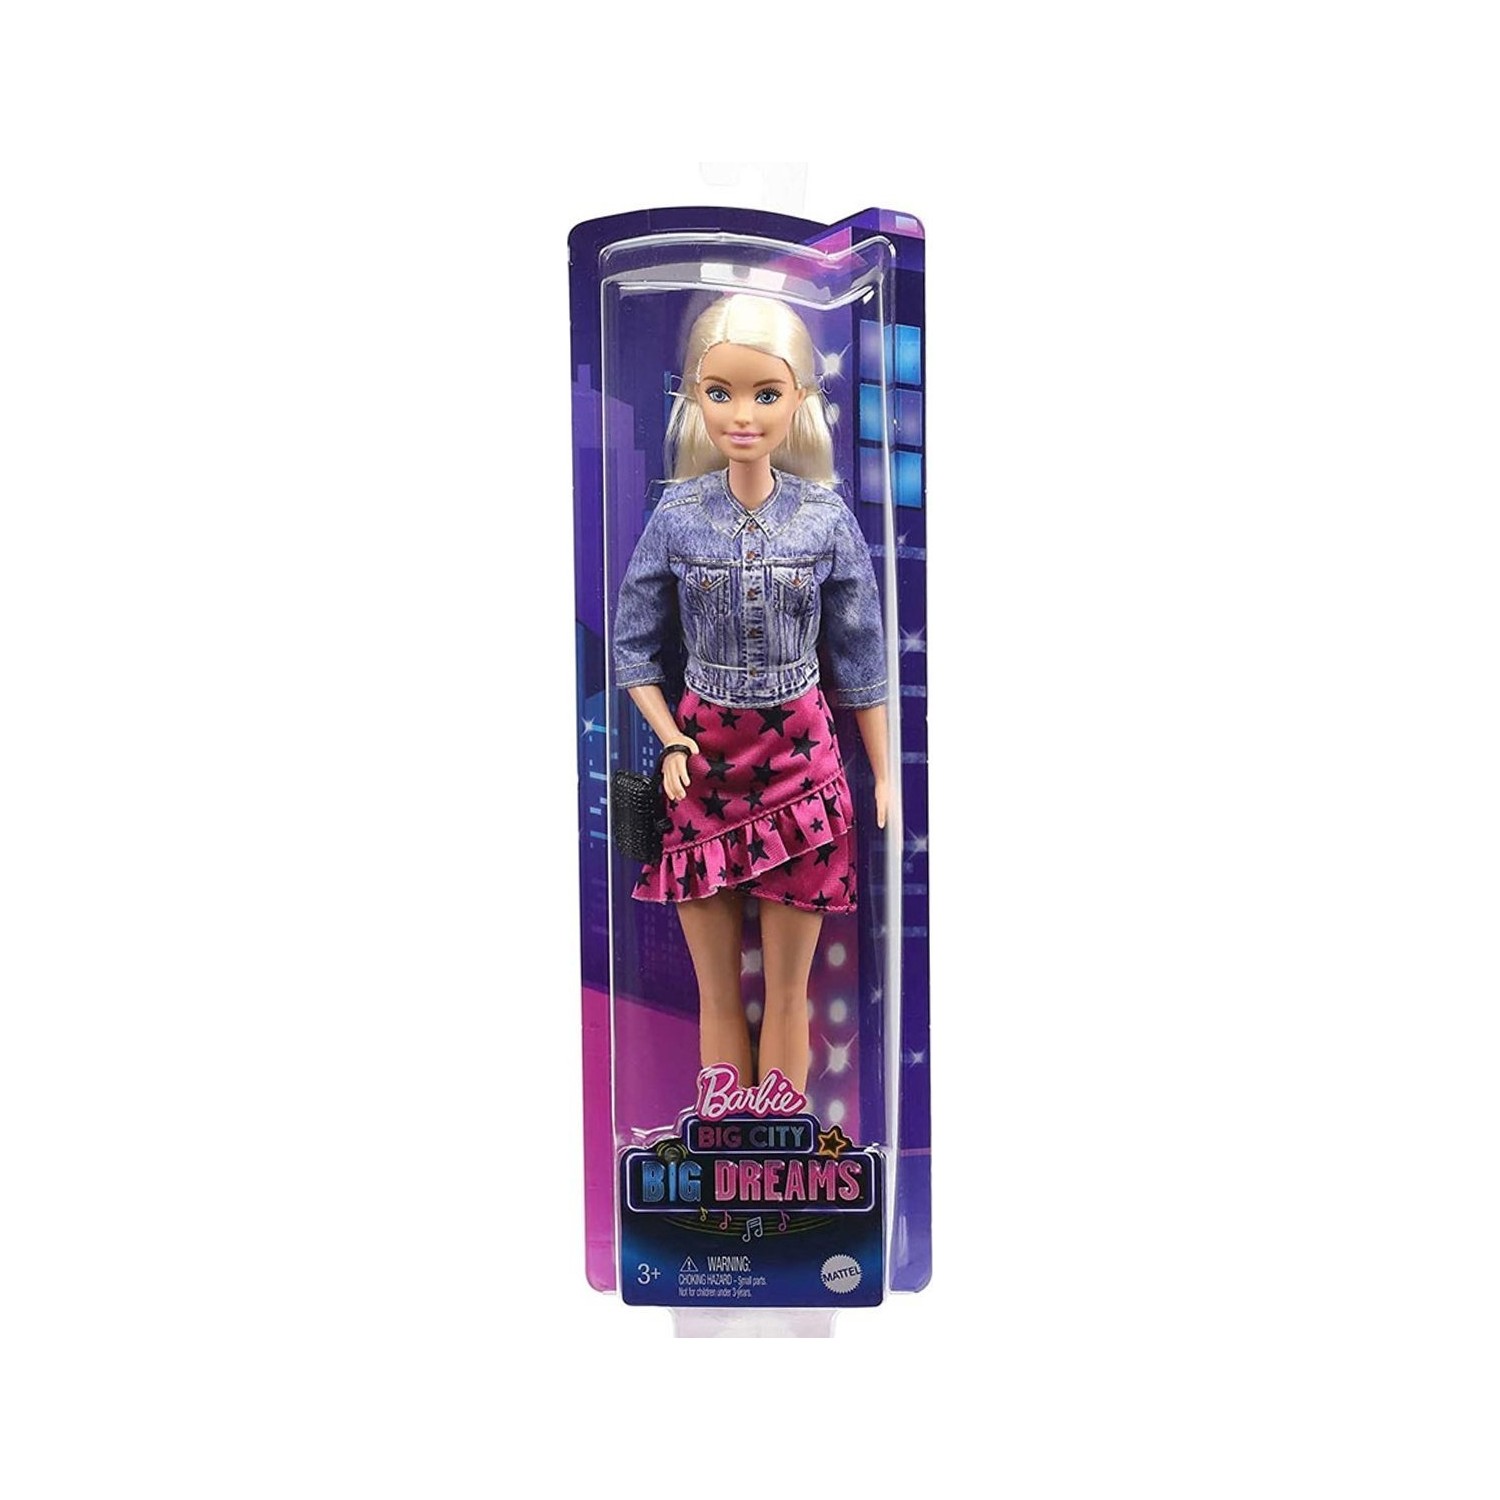 Игровой набор Barbie готовит лапшу GHK43 набор игровой barbie pets s2 dreamhouse